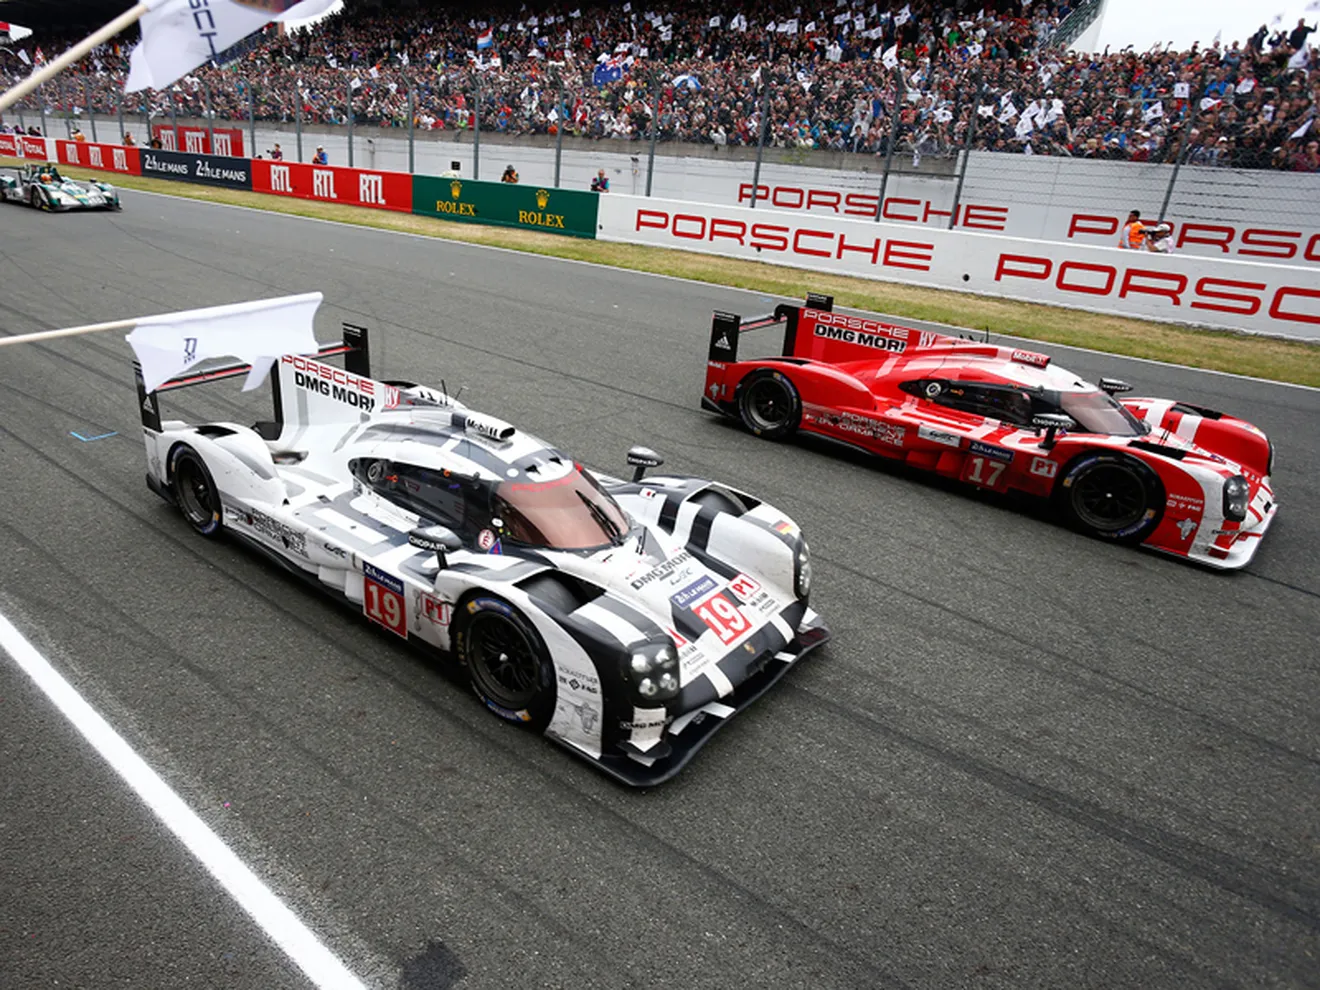 'Our Return': El camino de Porsche hasta Le Mans 2015